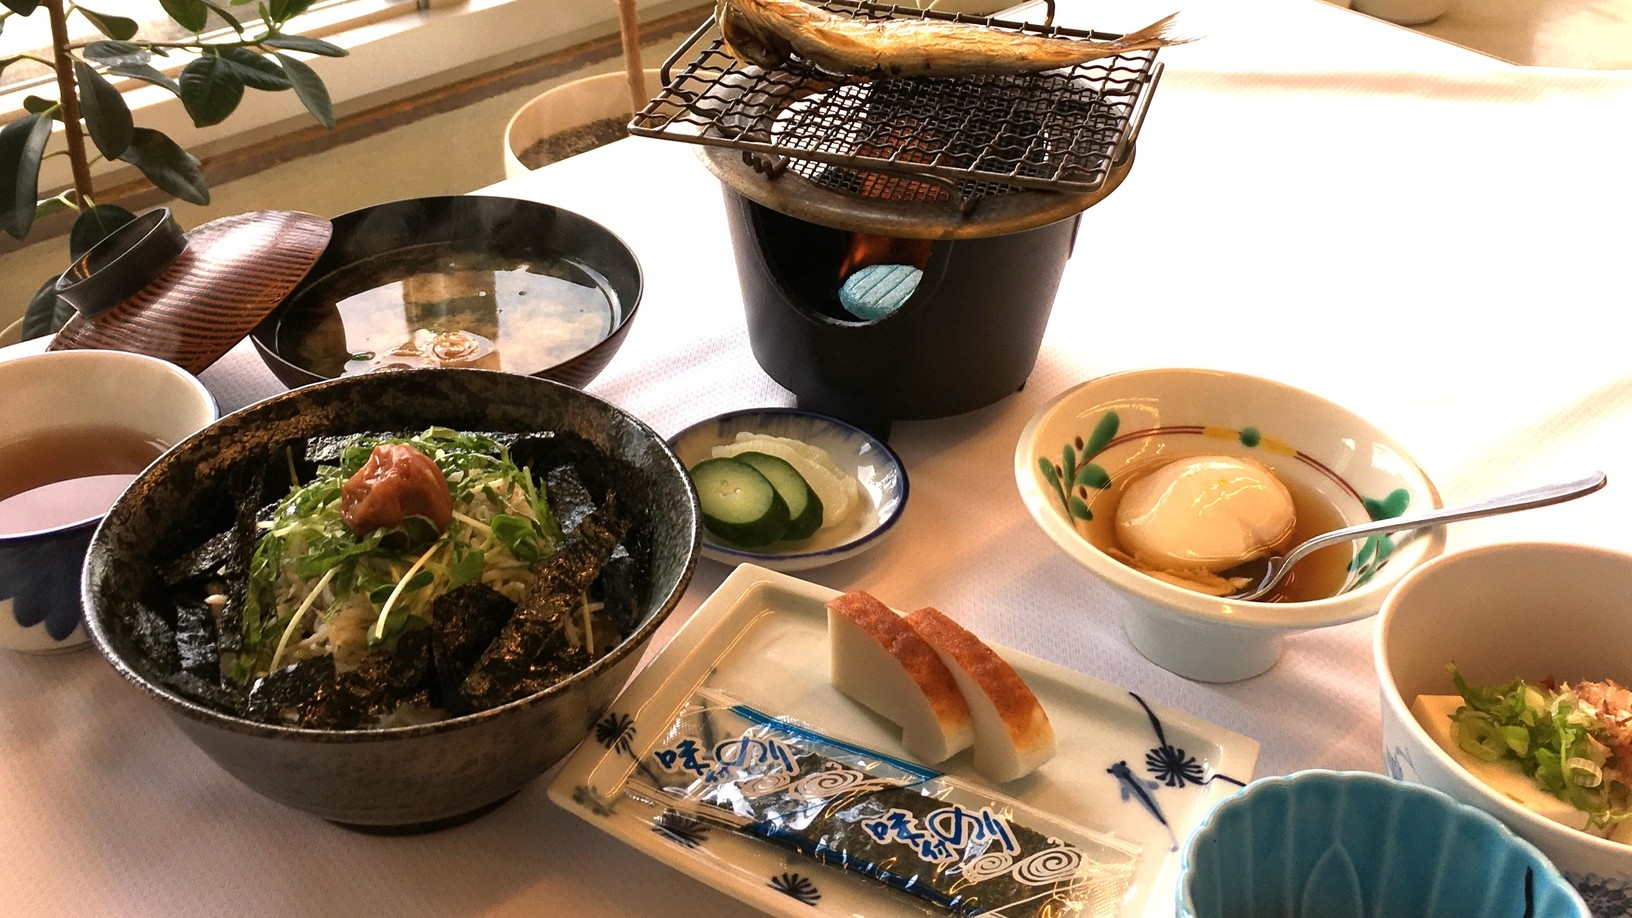 「釜揚げしらす丼がついた和歌浦の健康和朝食」地元直産のしらす丼で朝から元気いっぱい・朝食付プラン